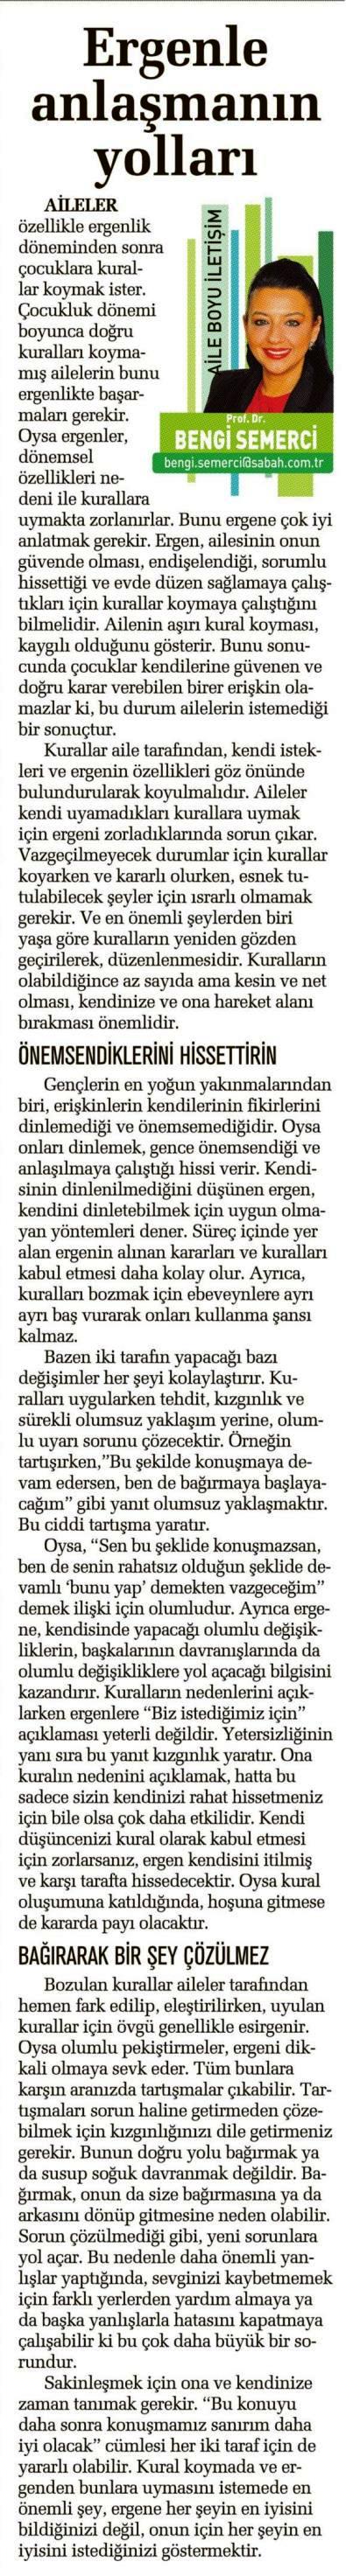 Ergenle Anlaşmanın Yolları - SABAH CUMARTESİ 19.04.2014